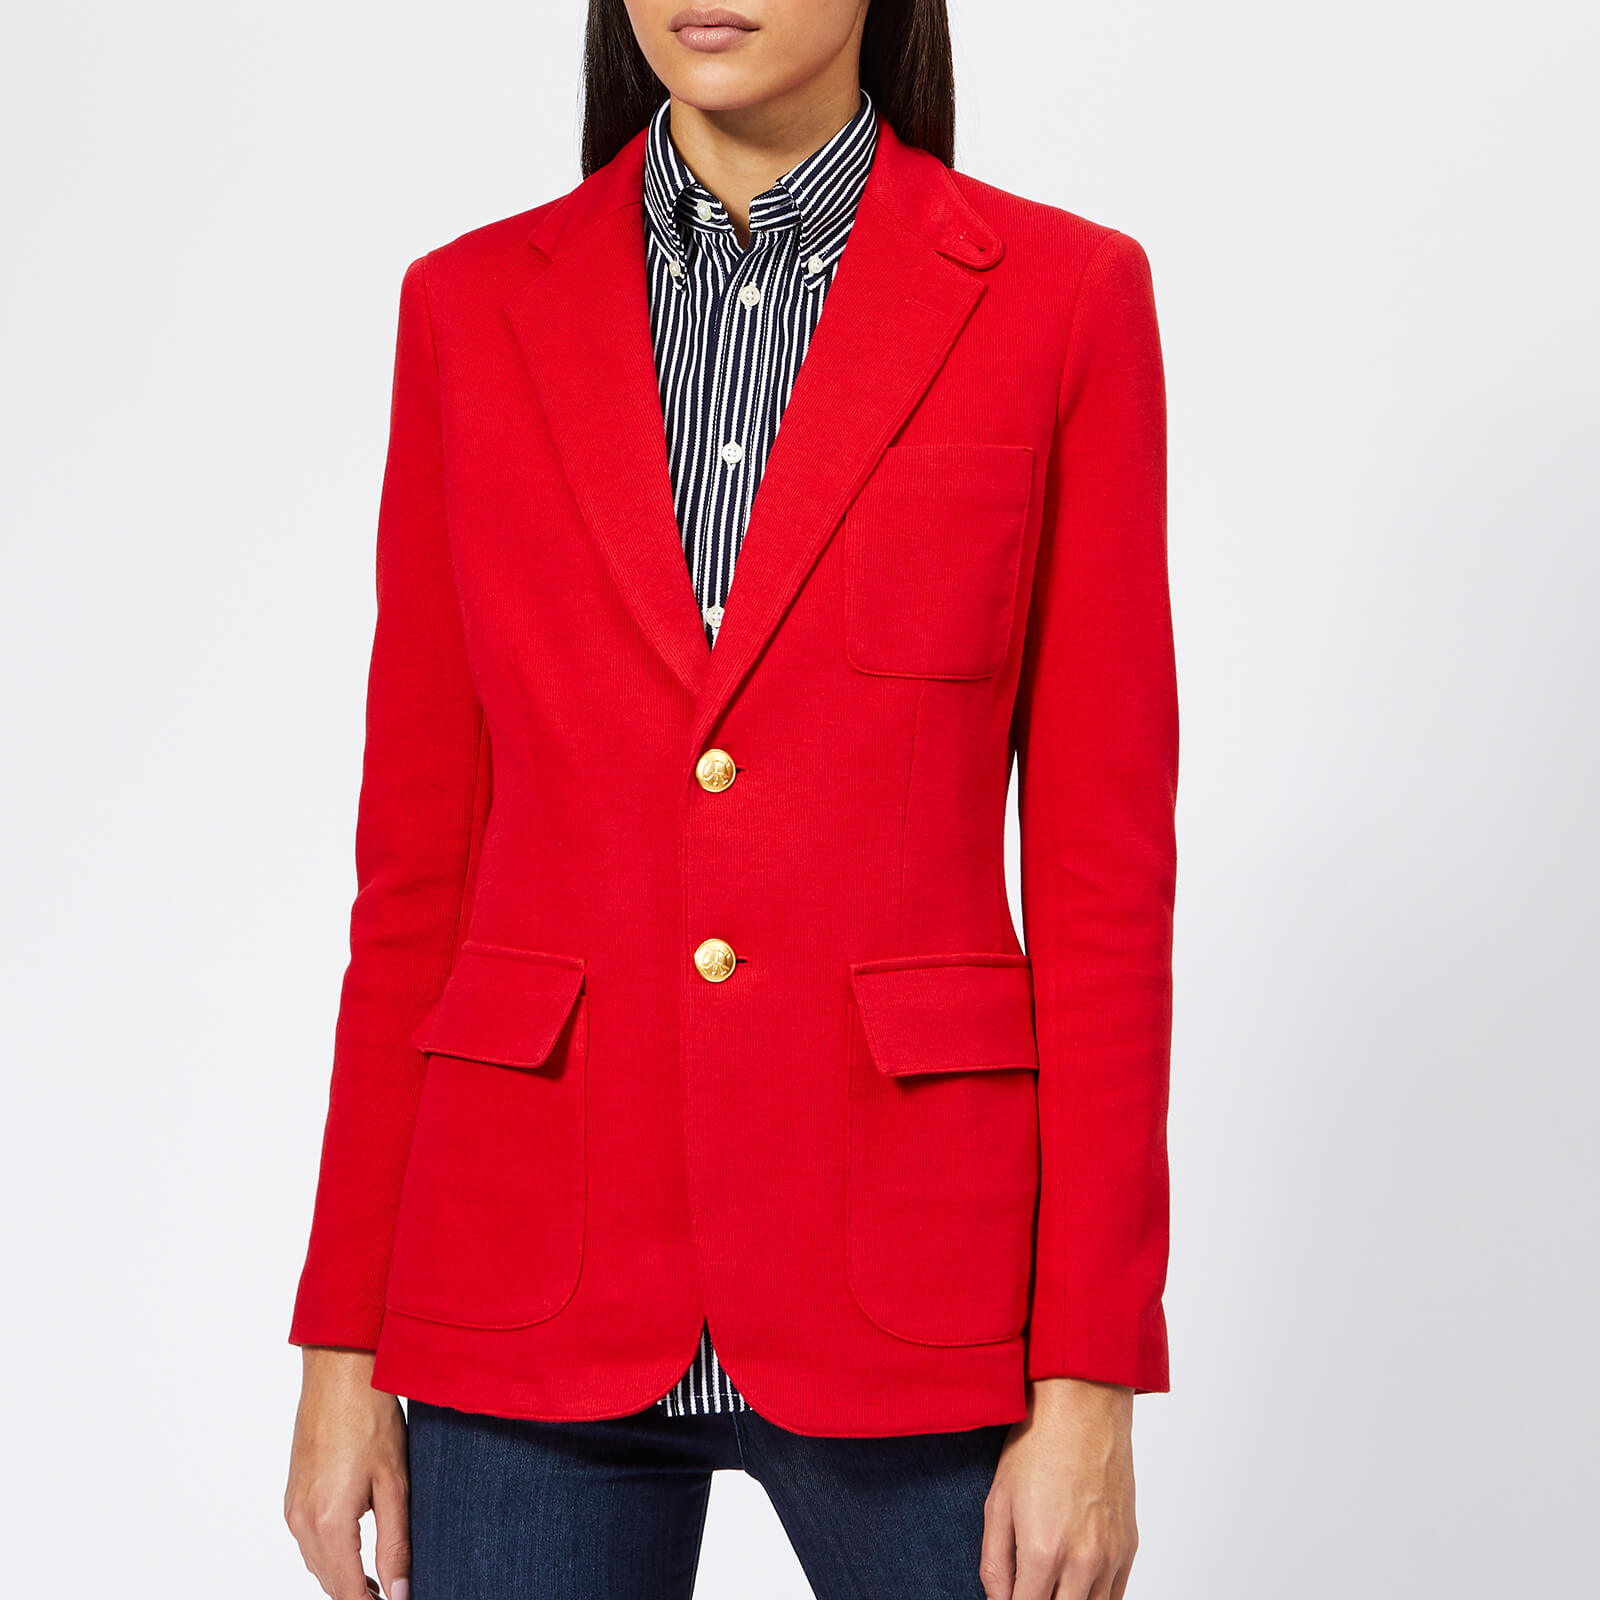 ralph lauren red jacket womens